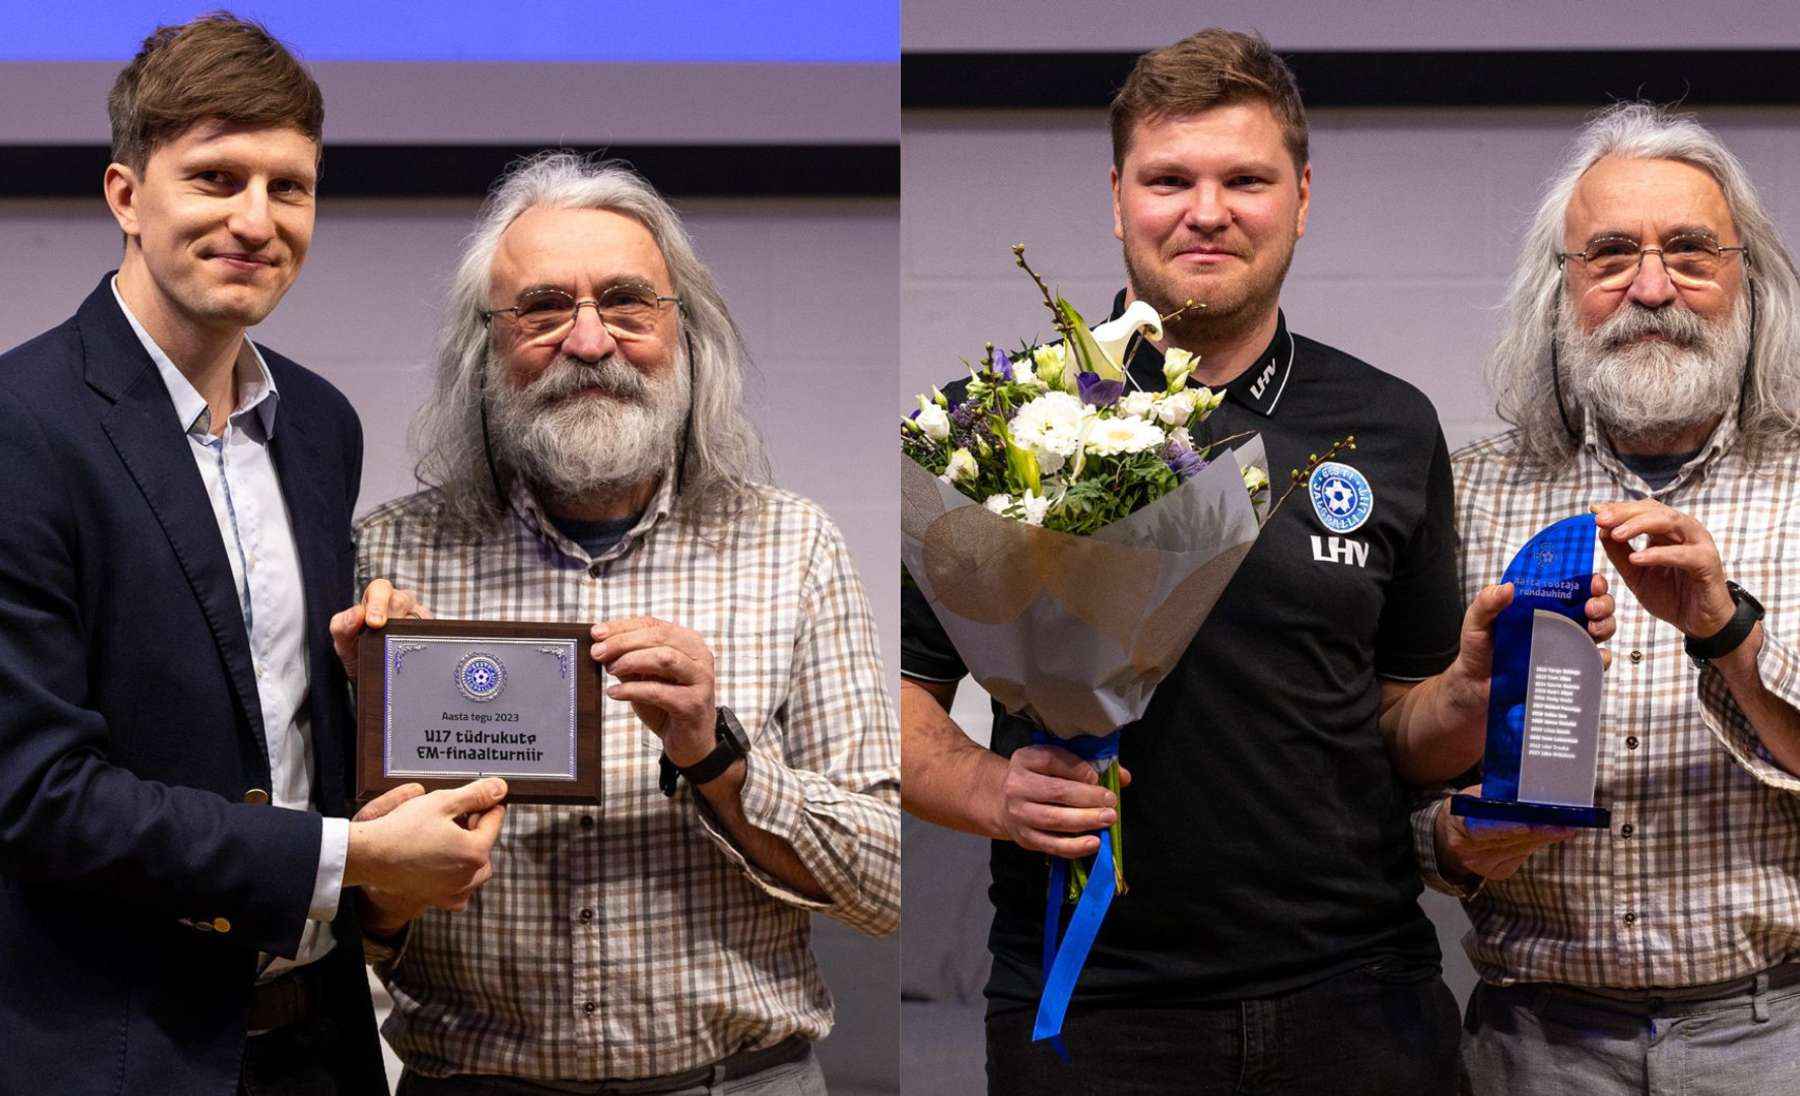 Aasta teo auhinna võttis vastu Juss Tamming (vasakpoolsel pildil), aasta töötajaks kuulutati Jako Arikainen (parempoolsel pildil). Laureaatide tunnustamise viis läbi EJLi president Aivar Pohlak